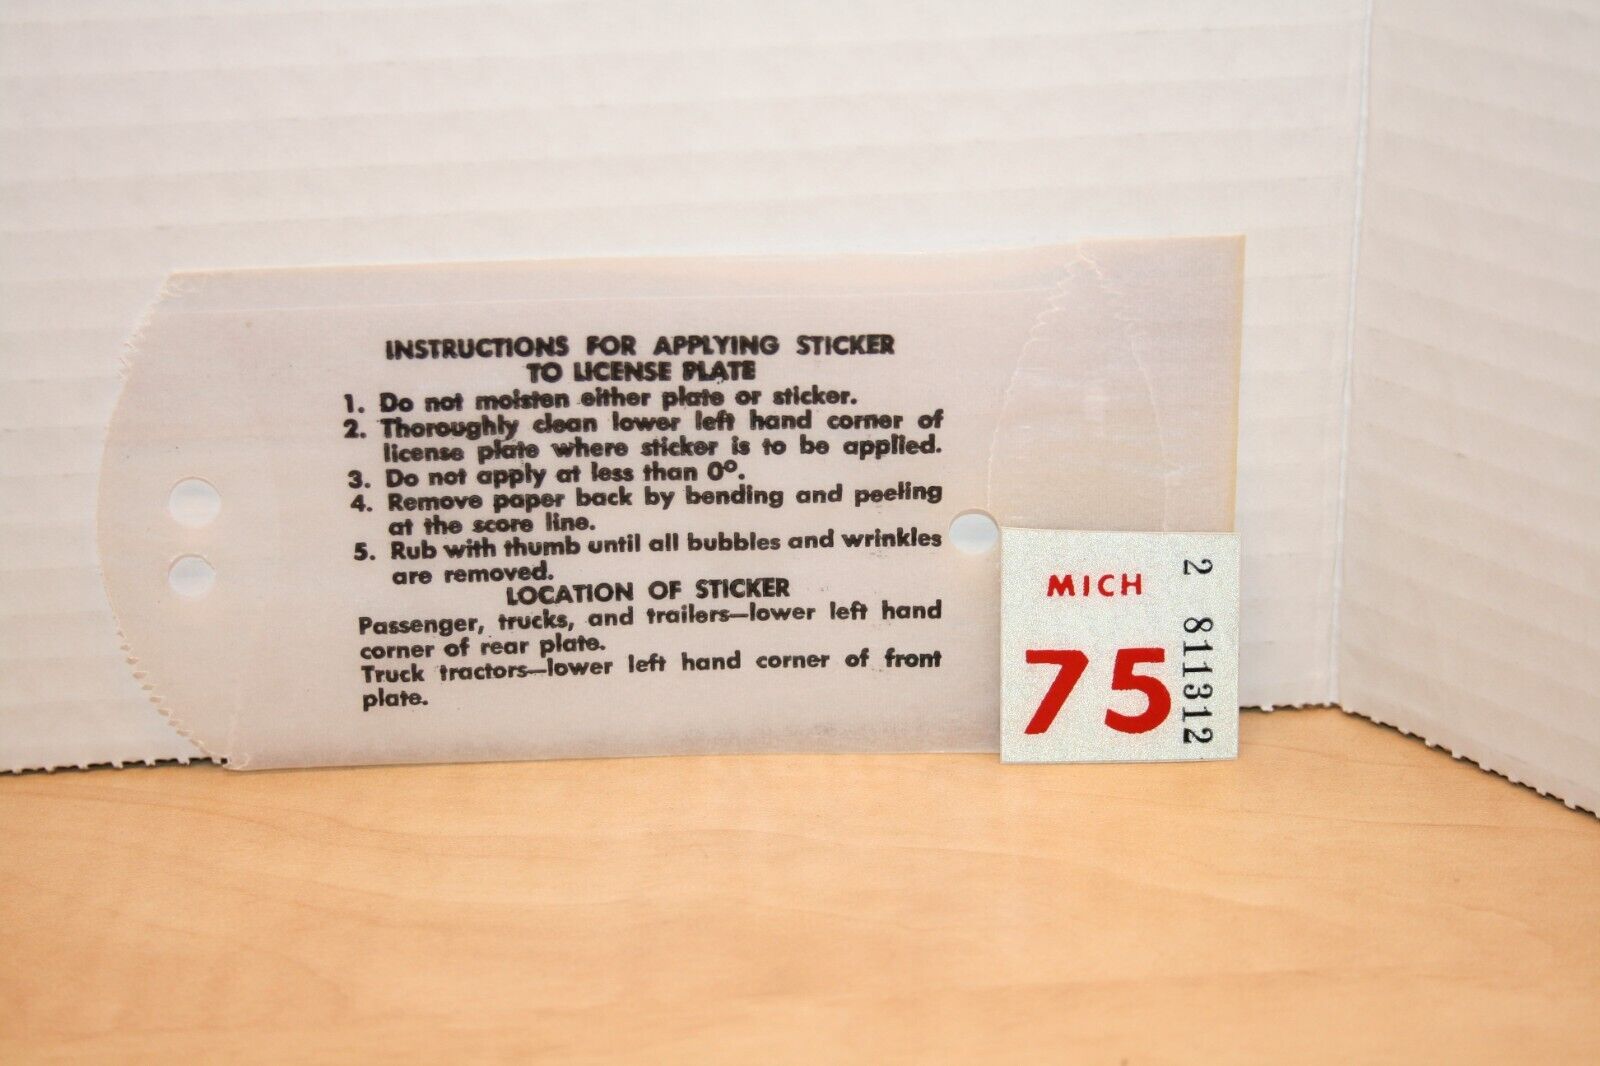 1975 MICHIGAN - LICENSE PLATE DECAL/STICKER -NOS - ORIGINAL - $1.50 ship to NA